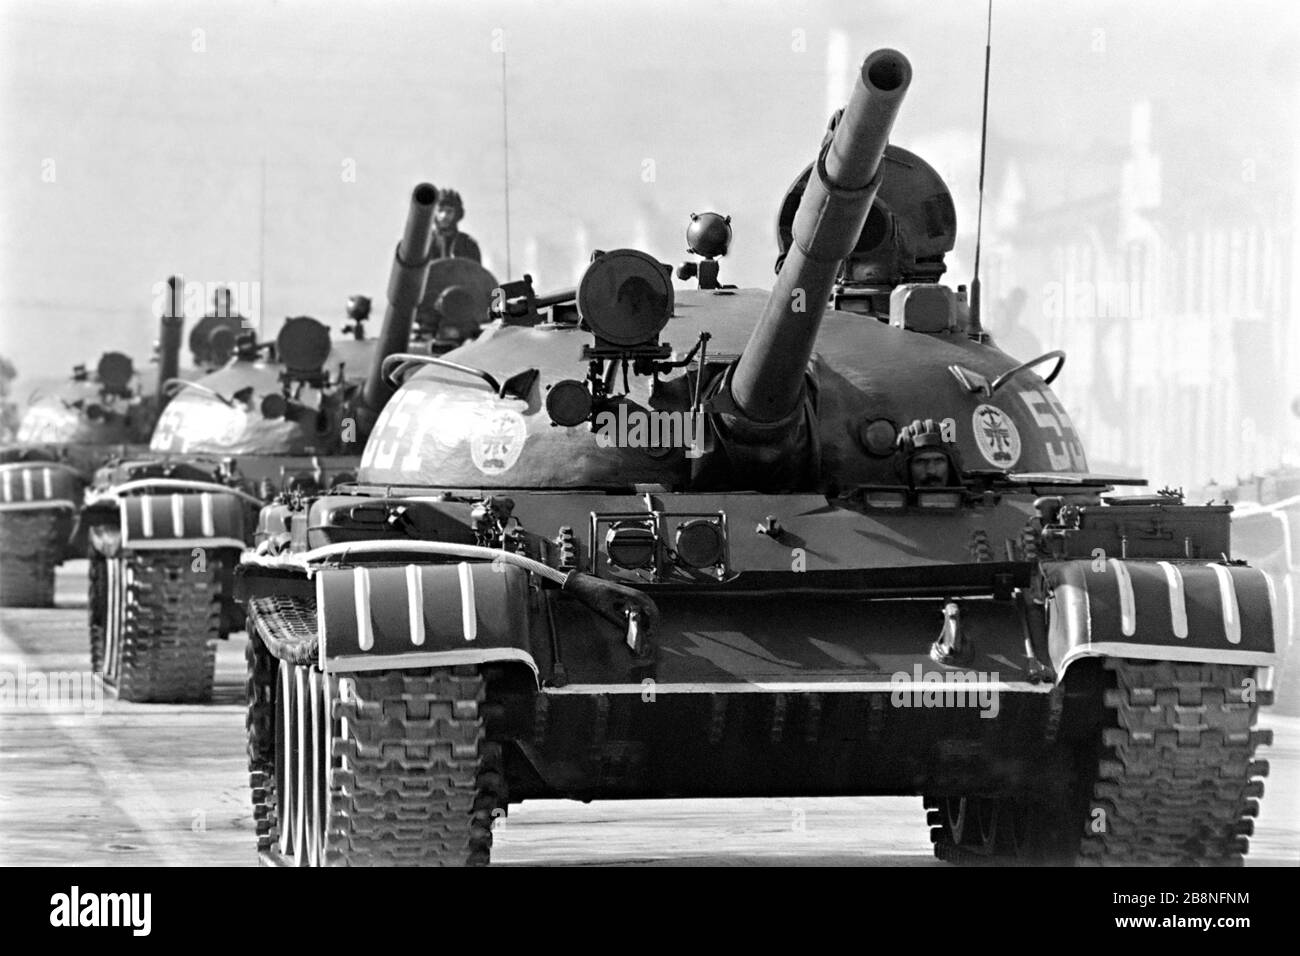 Afghanische Soldaten fahren während einer Militärparade mit einem sowjetischen T-62-Hauptkampftank, um den zehnten Jahrestag der kommunistischen Revolution am 26. April 1988 in Kabul, Afghanistan, zu begehen. Das kommunistische Regime übernahm die Macht in einer von der Sowjetunion unterstützten Revolte, die als Saurrevolution bekannt ist. Stockfoto